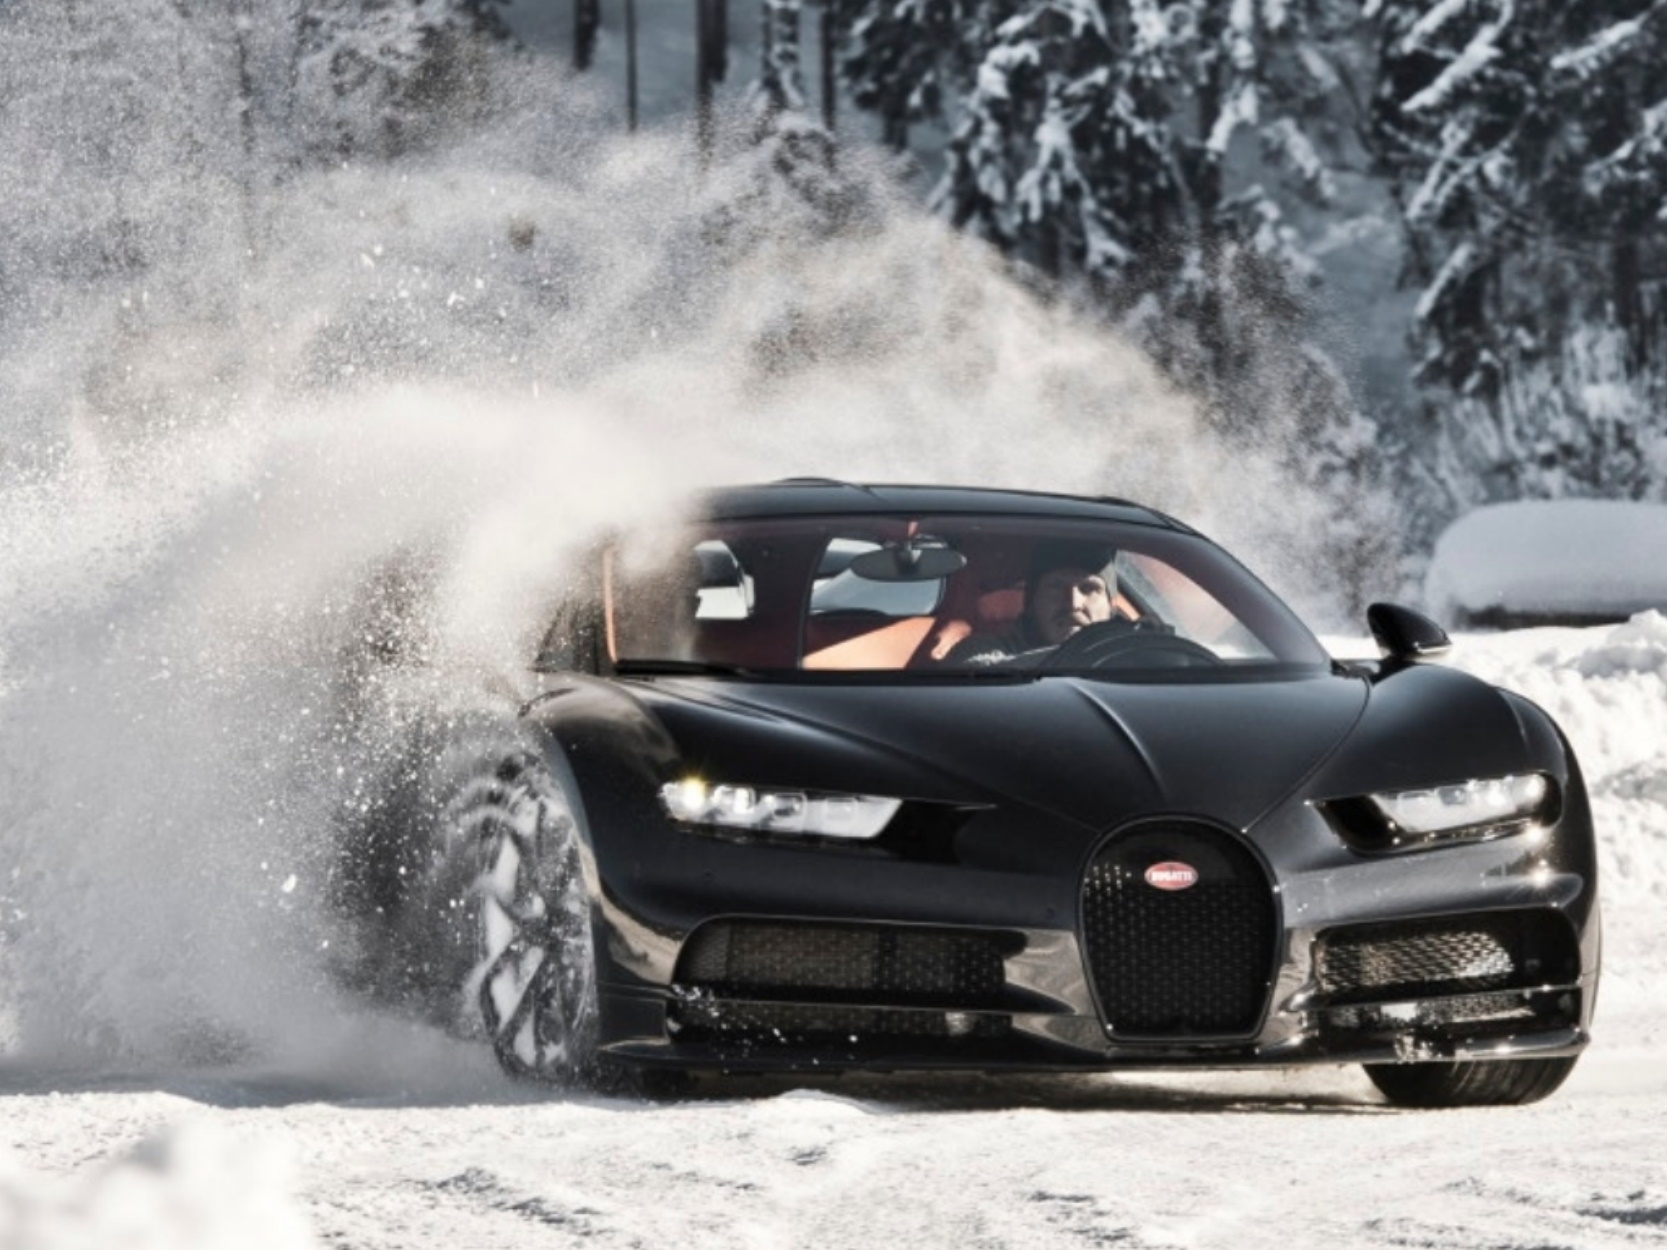 Κάνοντας drifting με μια Bugatti σε παγωμένη πίστα στην Αυστρία